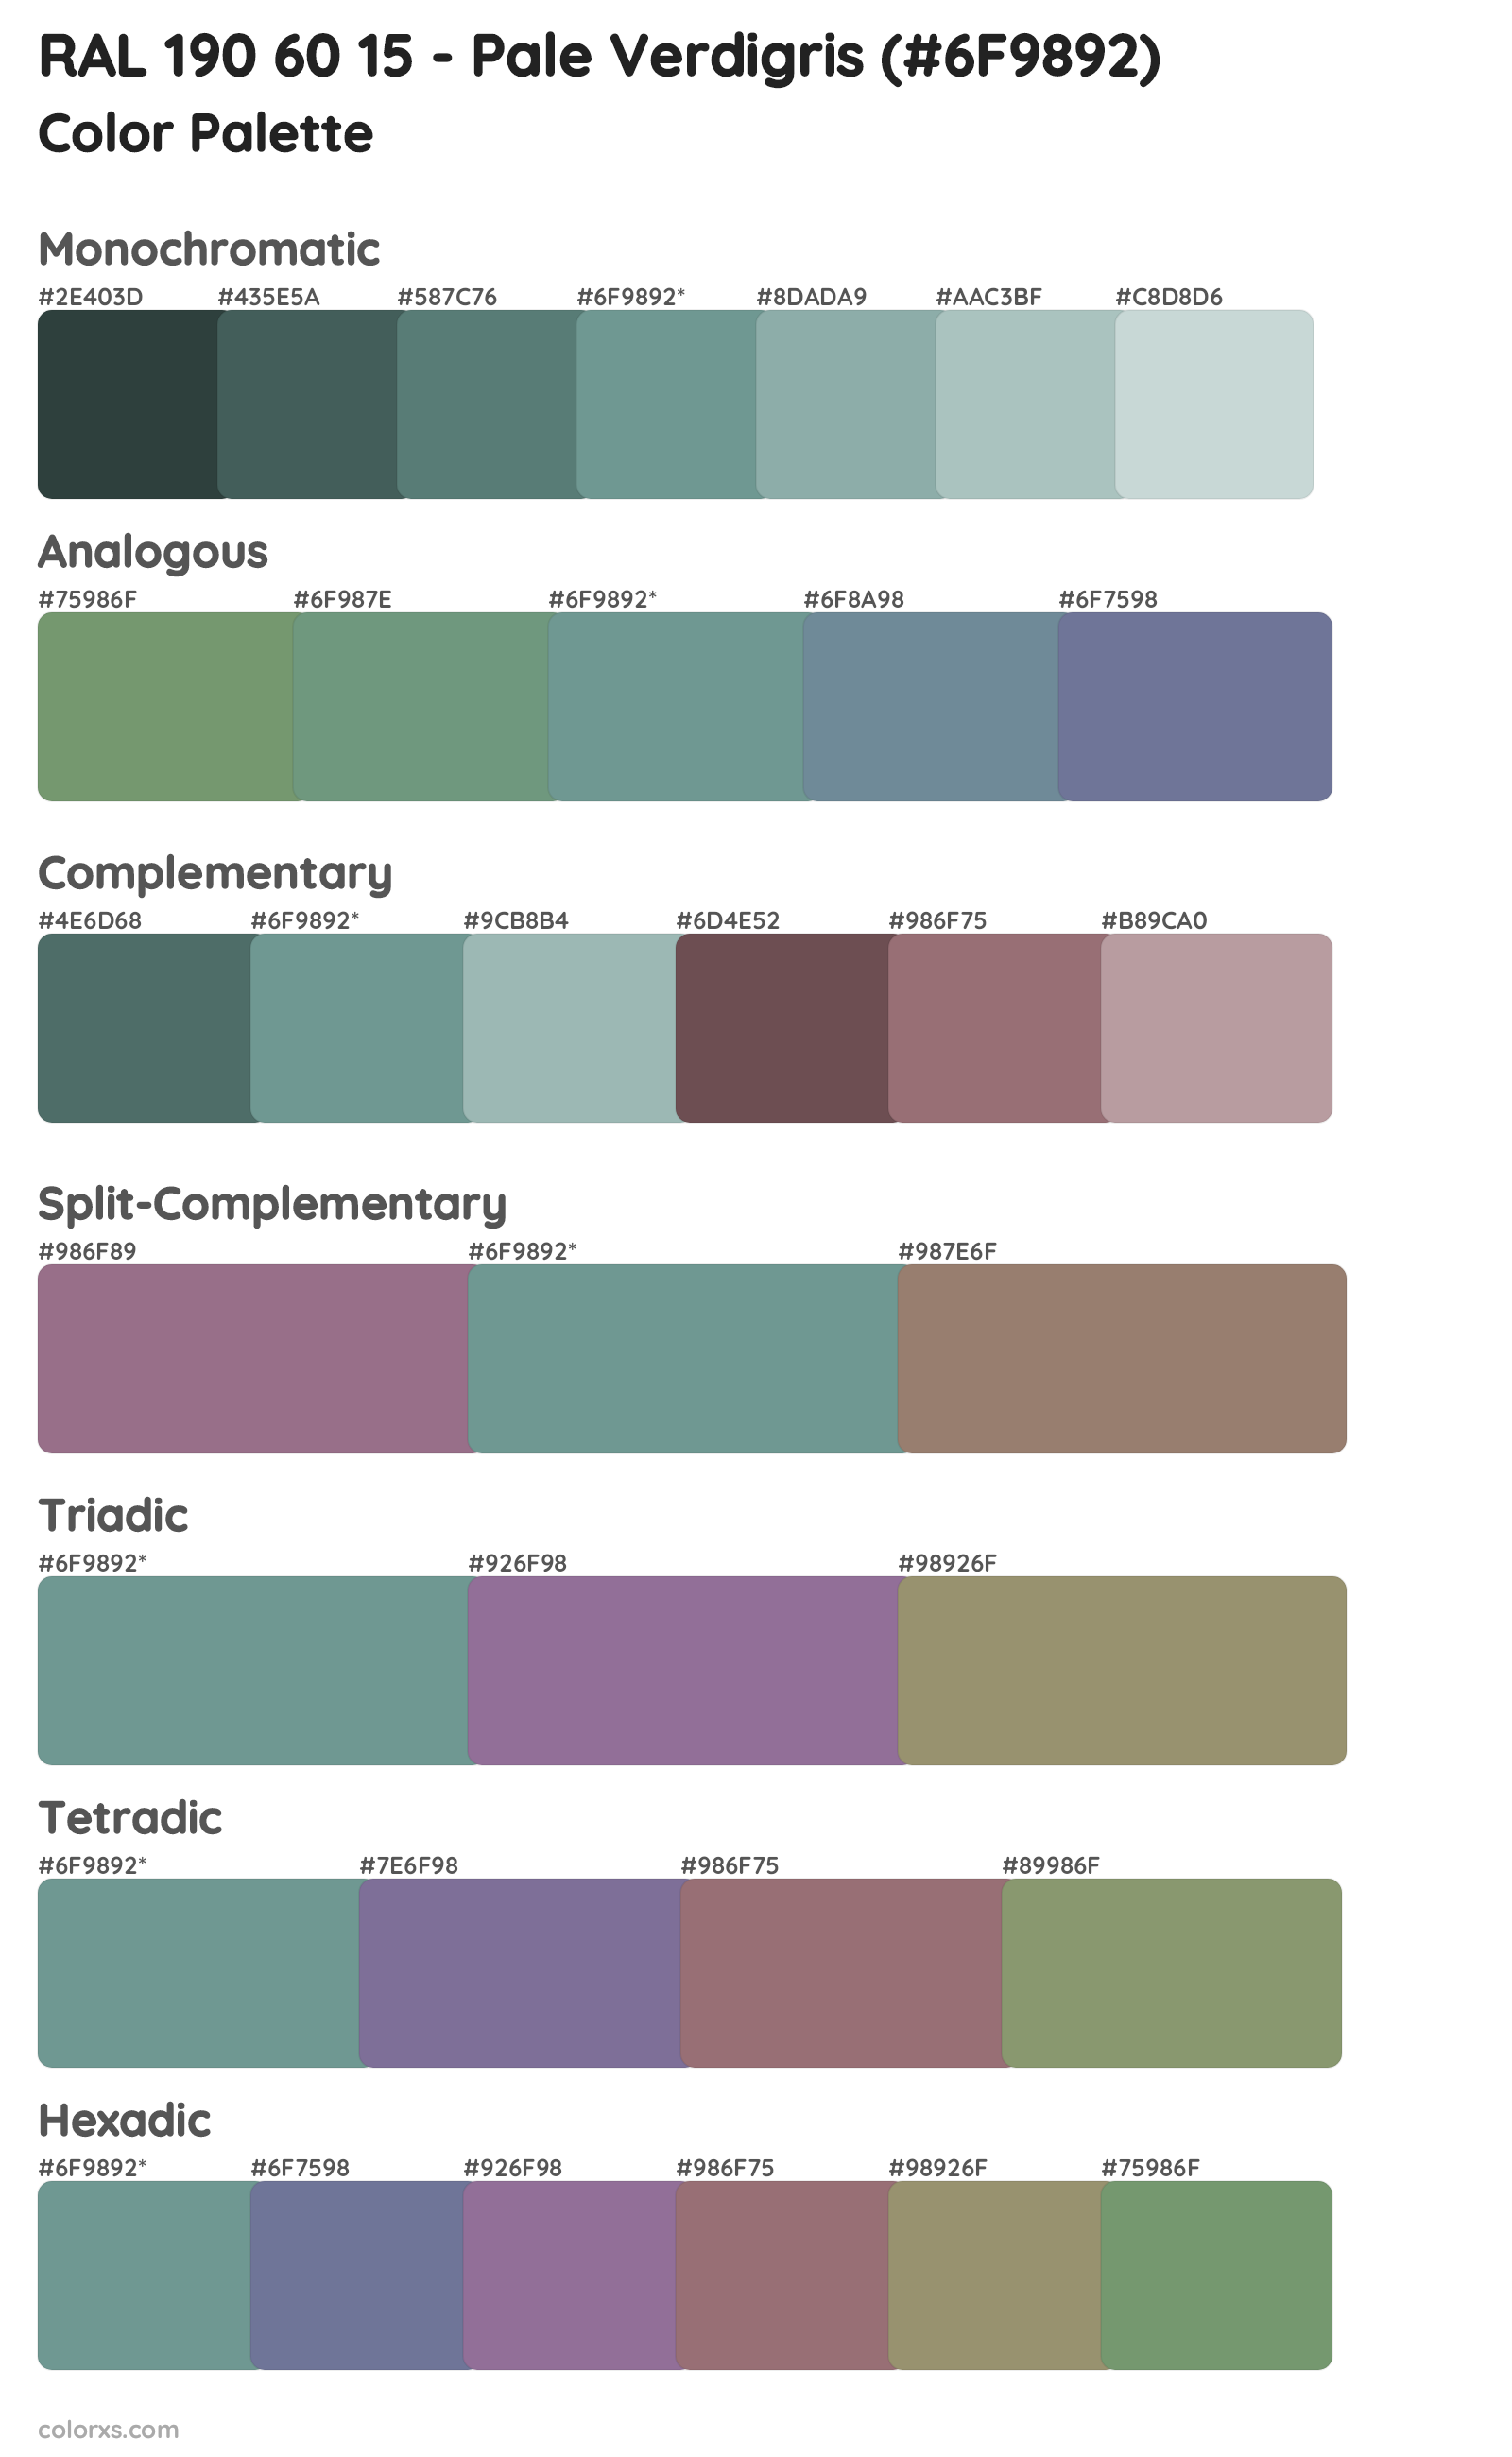 RAL 190 60 15 - Pale Verdigris Color Scheme Palettes